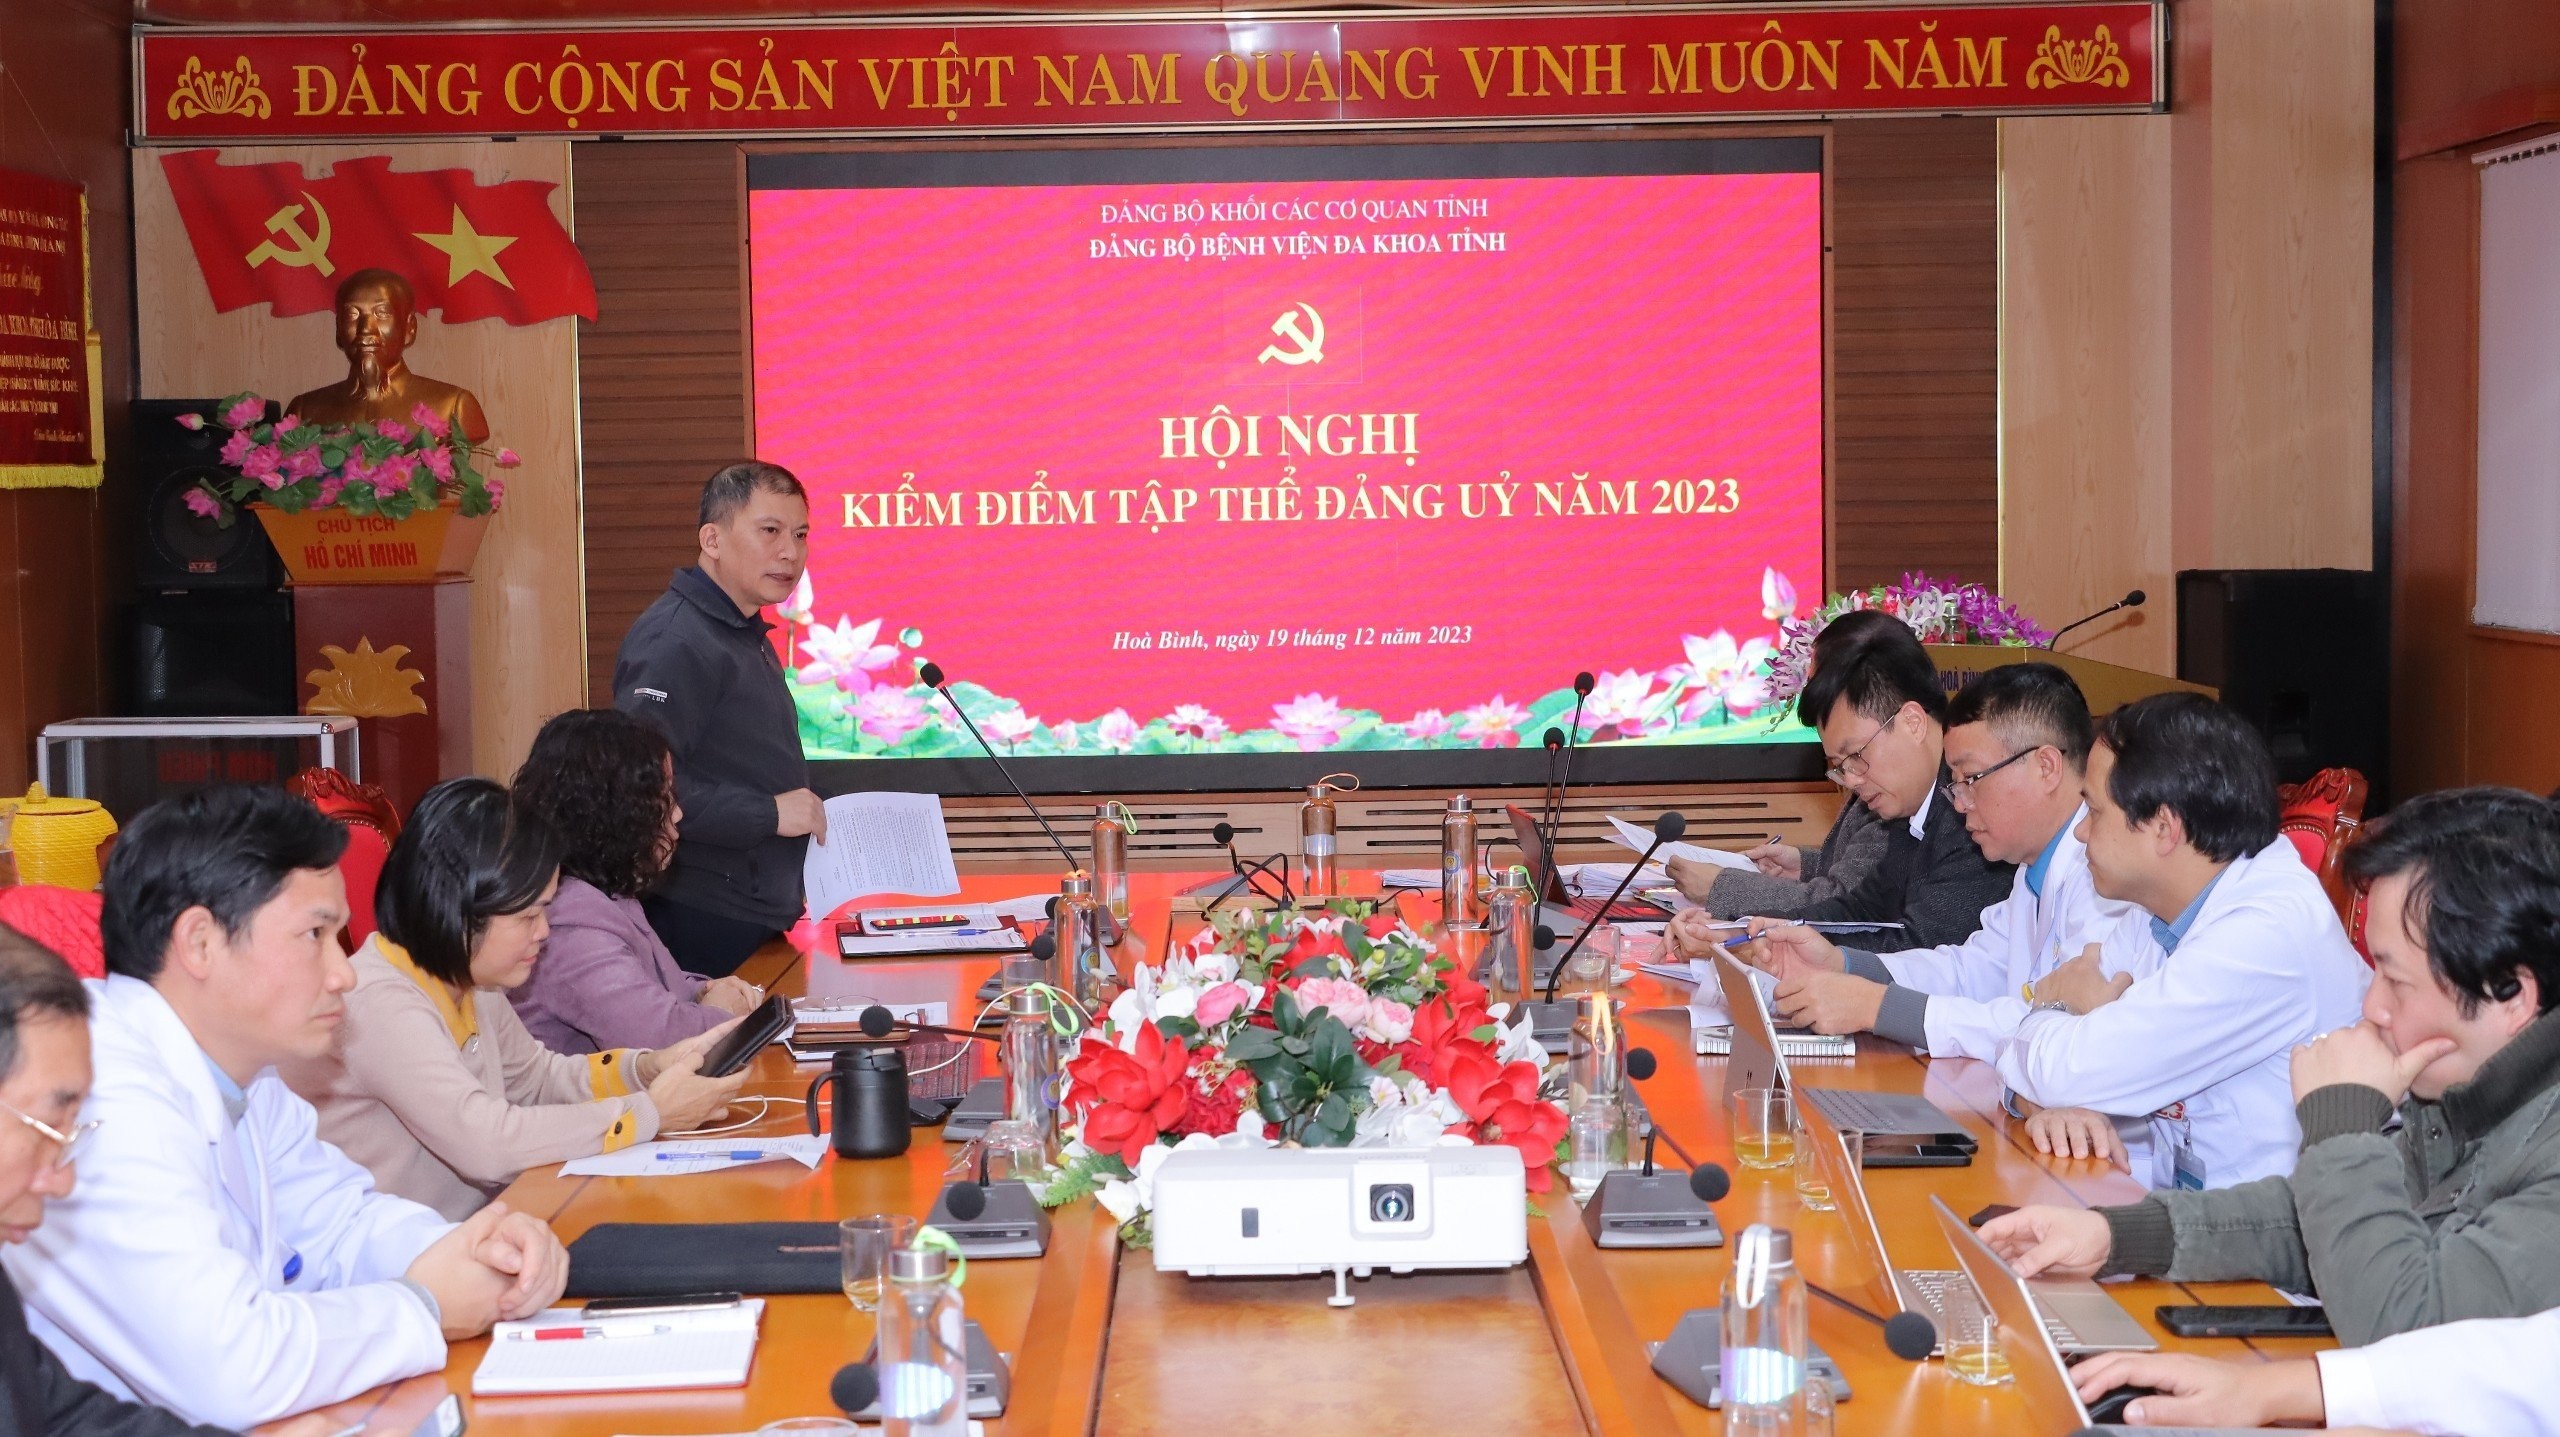  Hội nghị kiểm điểm tập thể Đảng uỷ Bệnh viện Đa khoa tỉnh Hoà Bình năm 2023